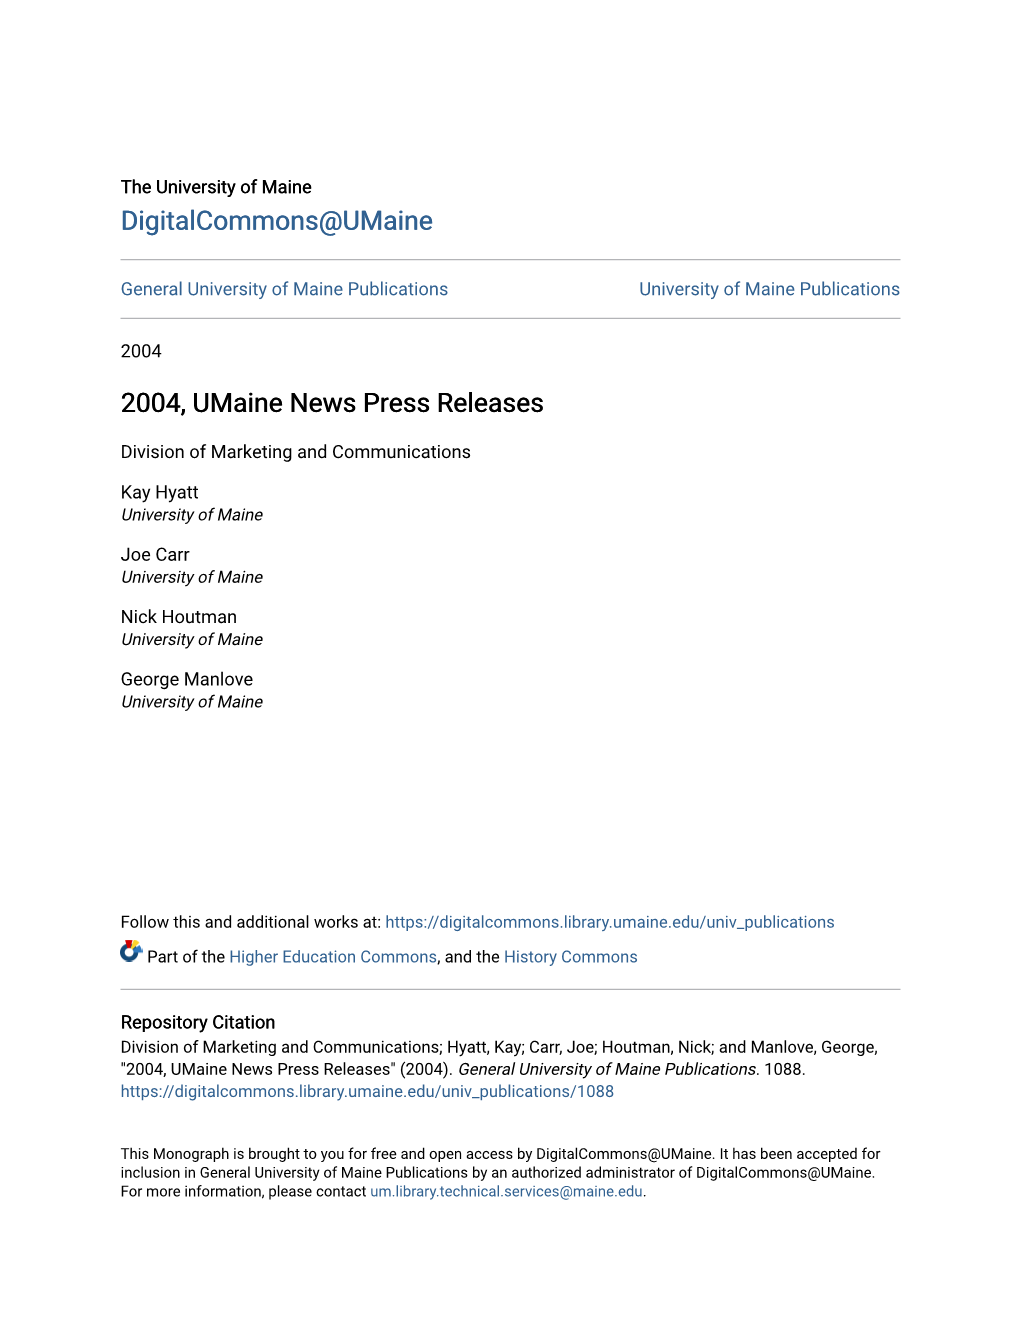 2004, Umaine News Press Releases